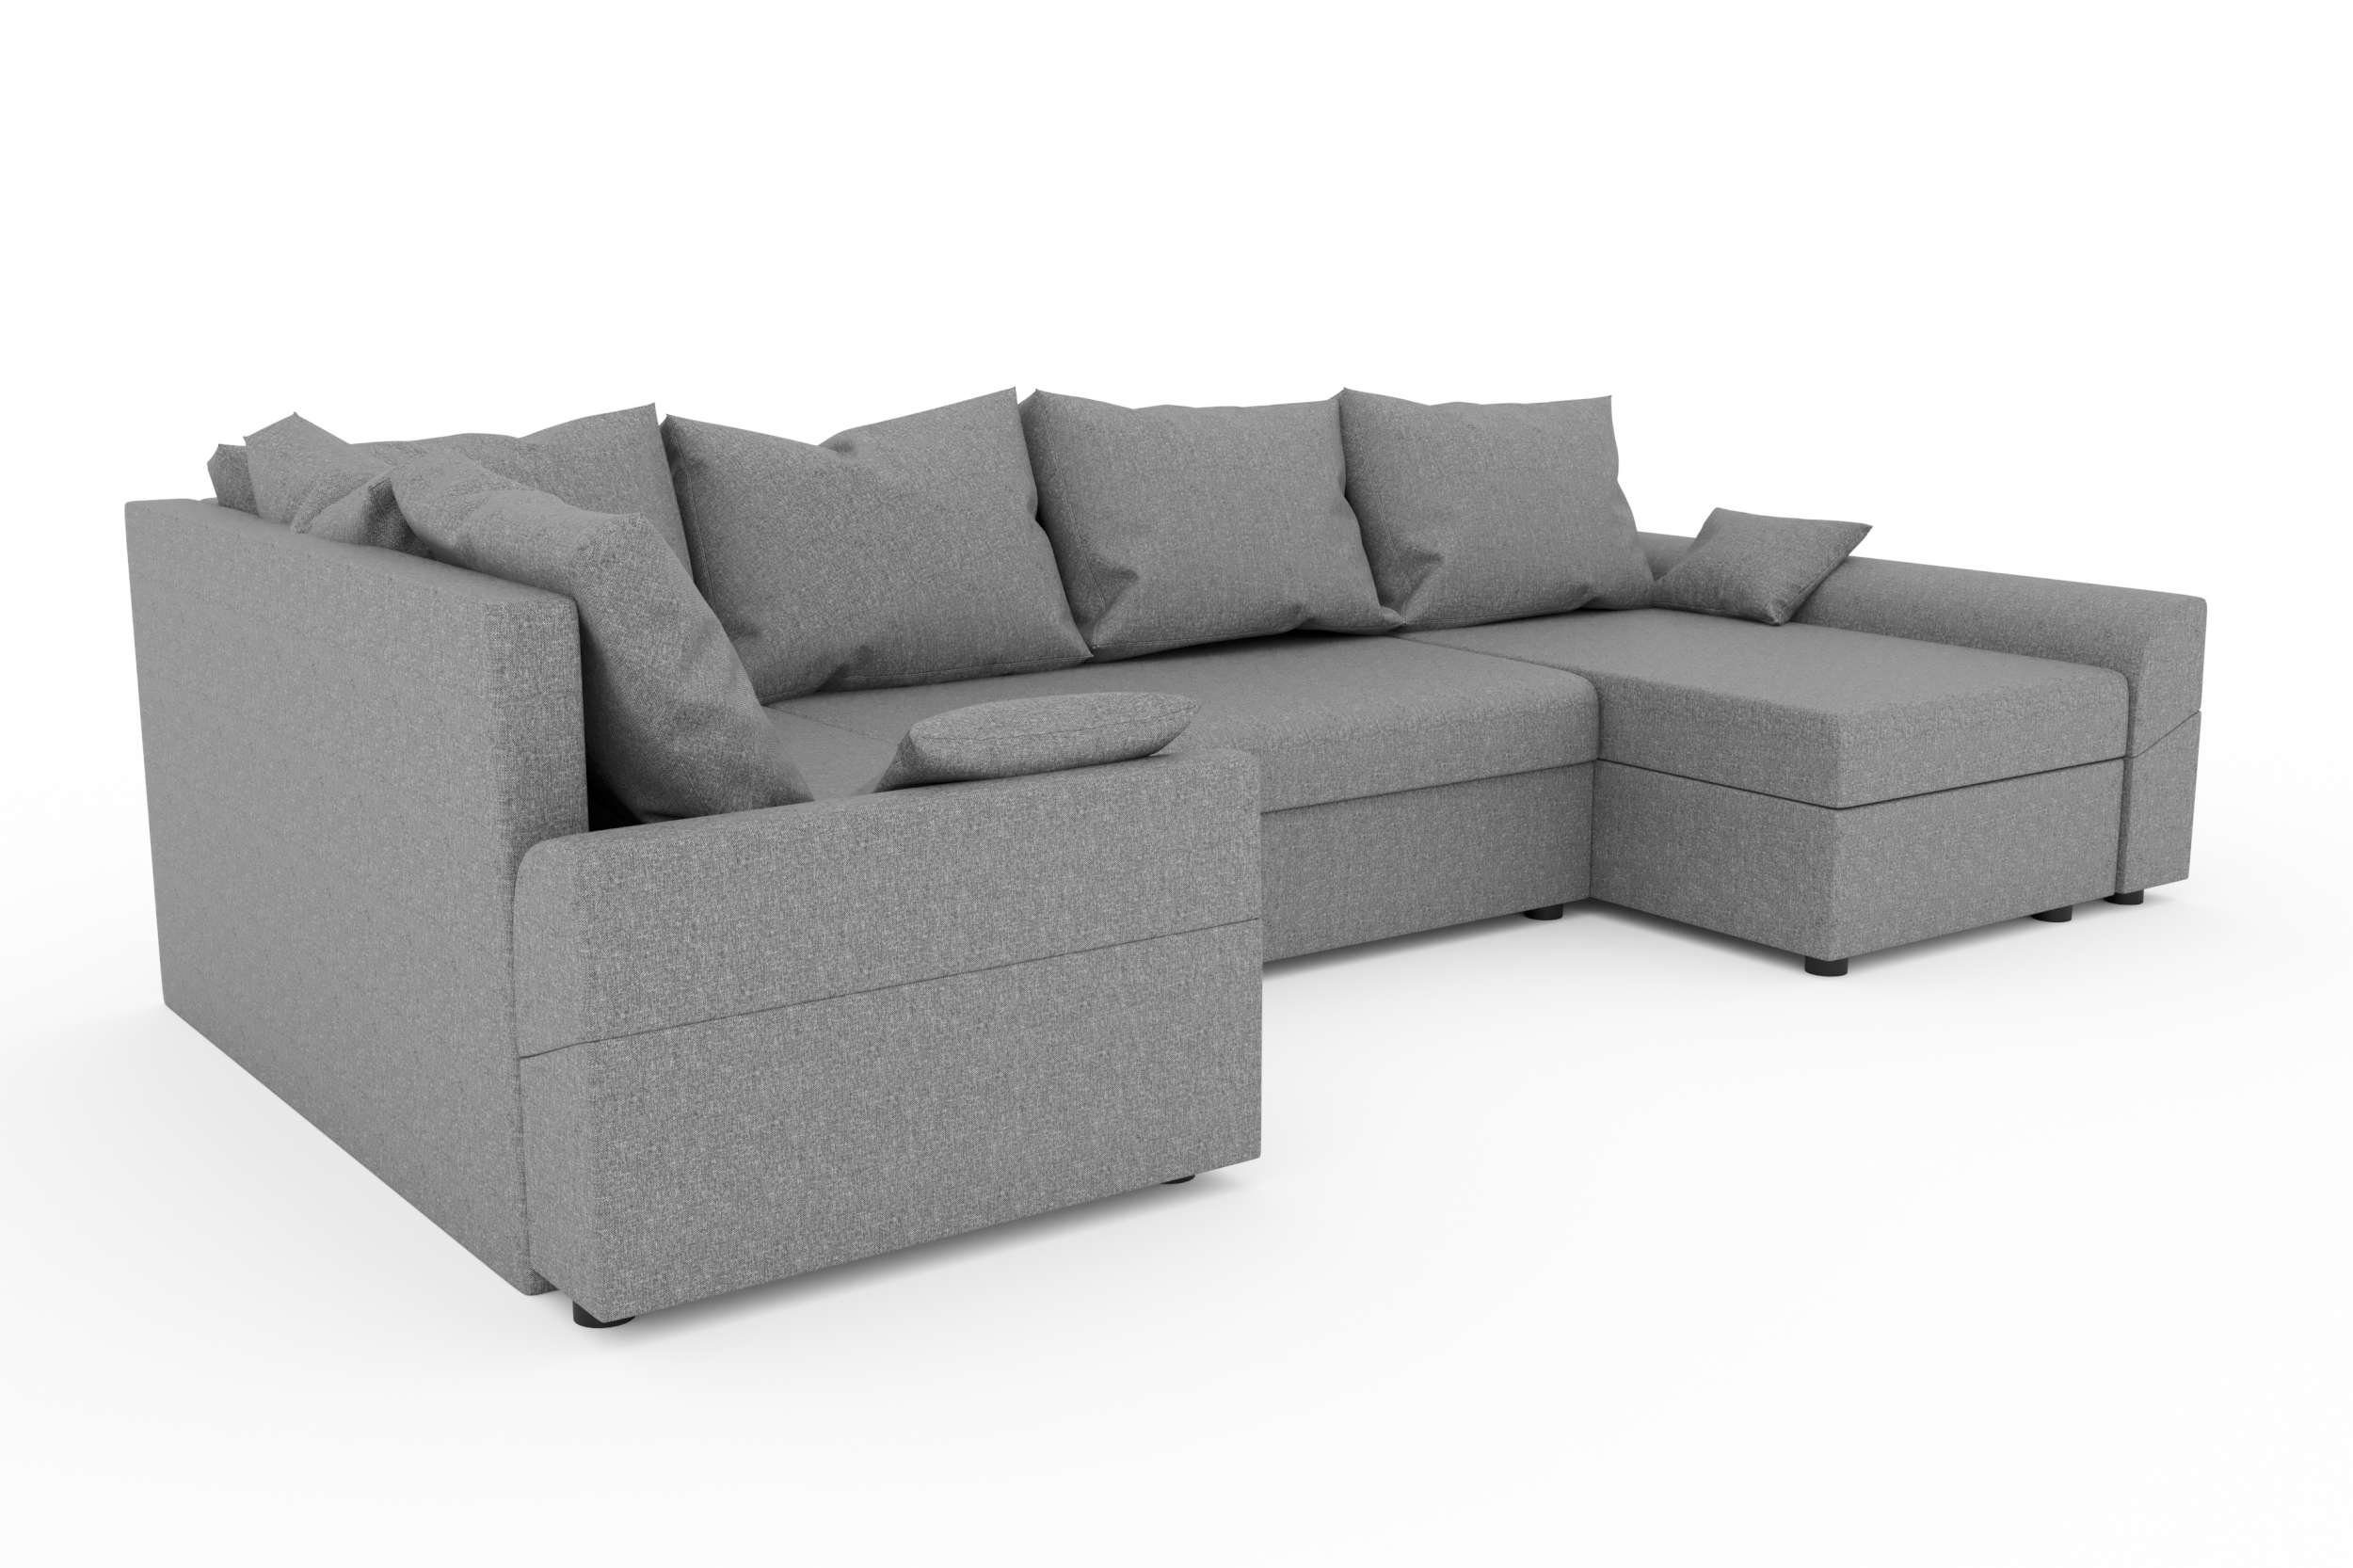 Eckcouch, Sofa, Bettfunktion, Design mit mit U-Form, Bailey, Sitzkomfort, Bettkasten, Wohnlandschaft Modern Stylefy